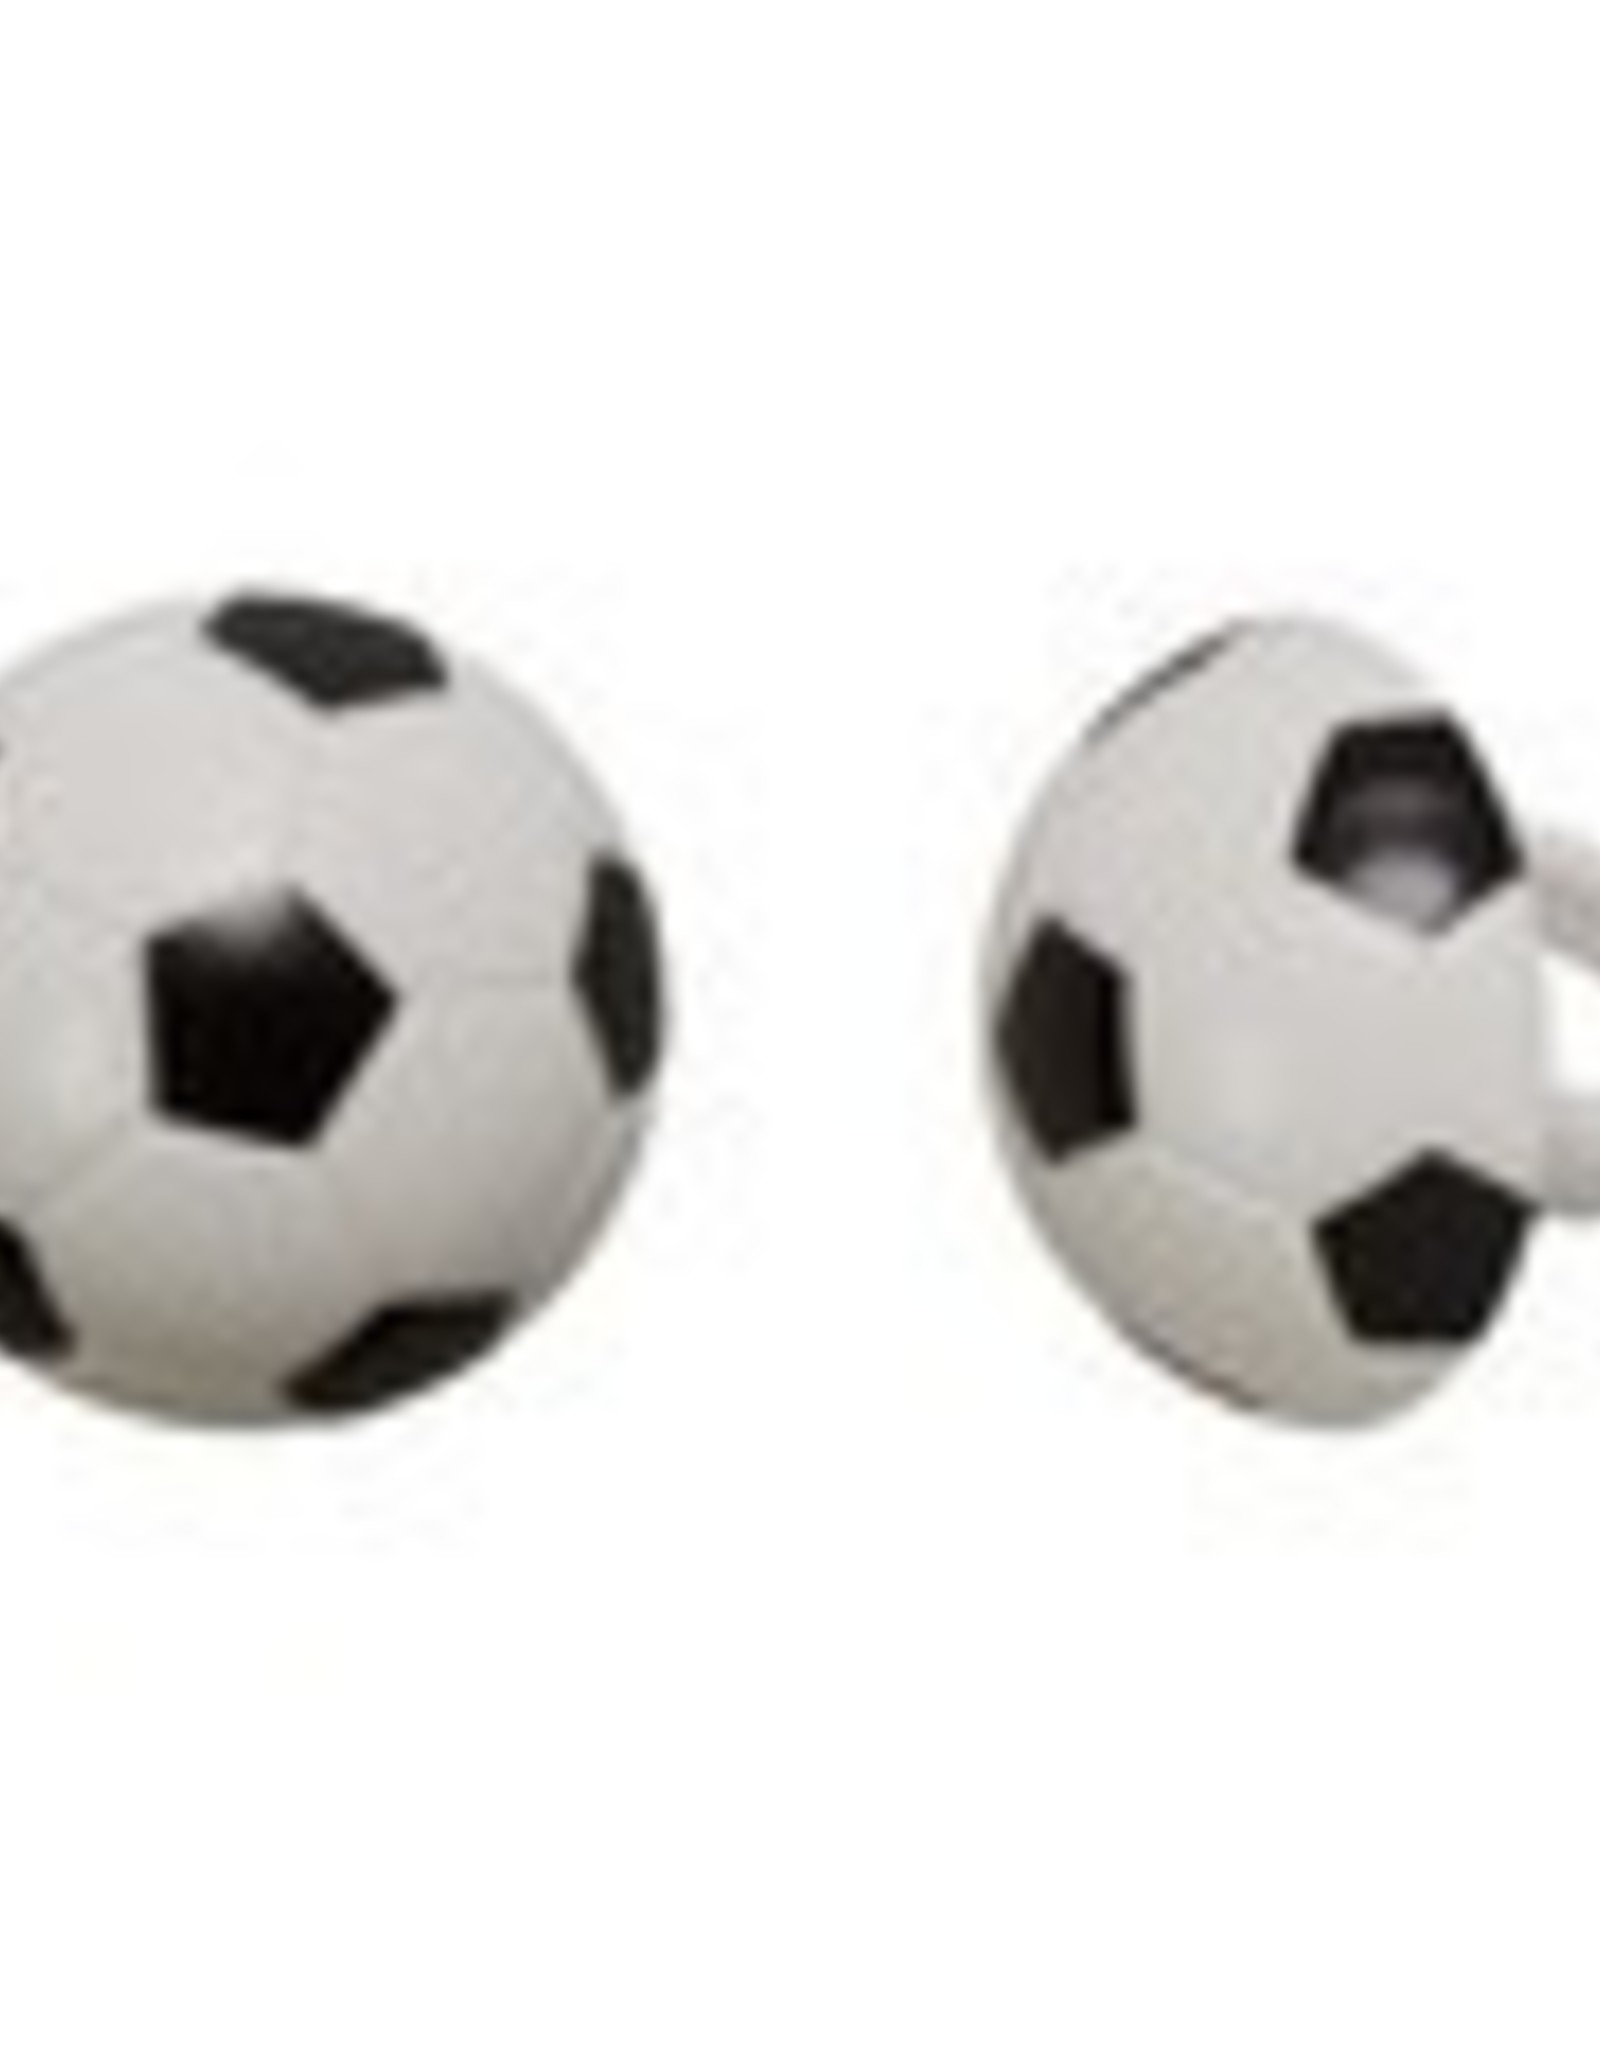 Soccer Ball Rings (12 per pkg)